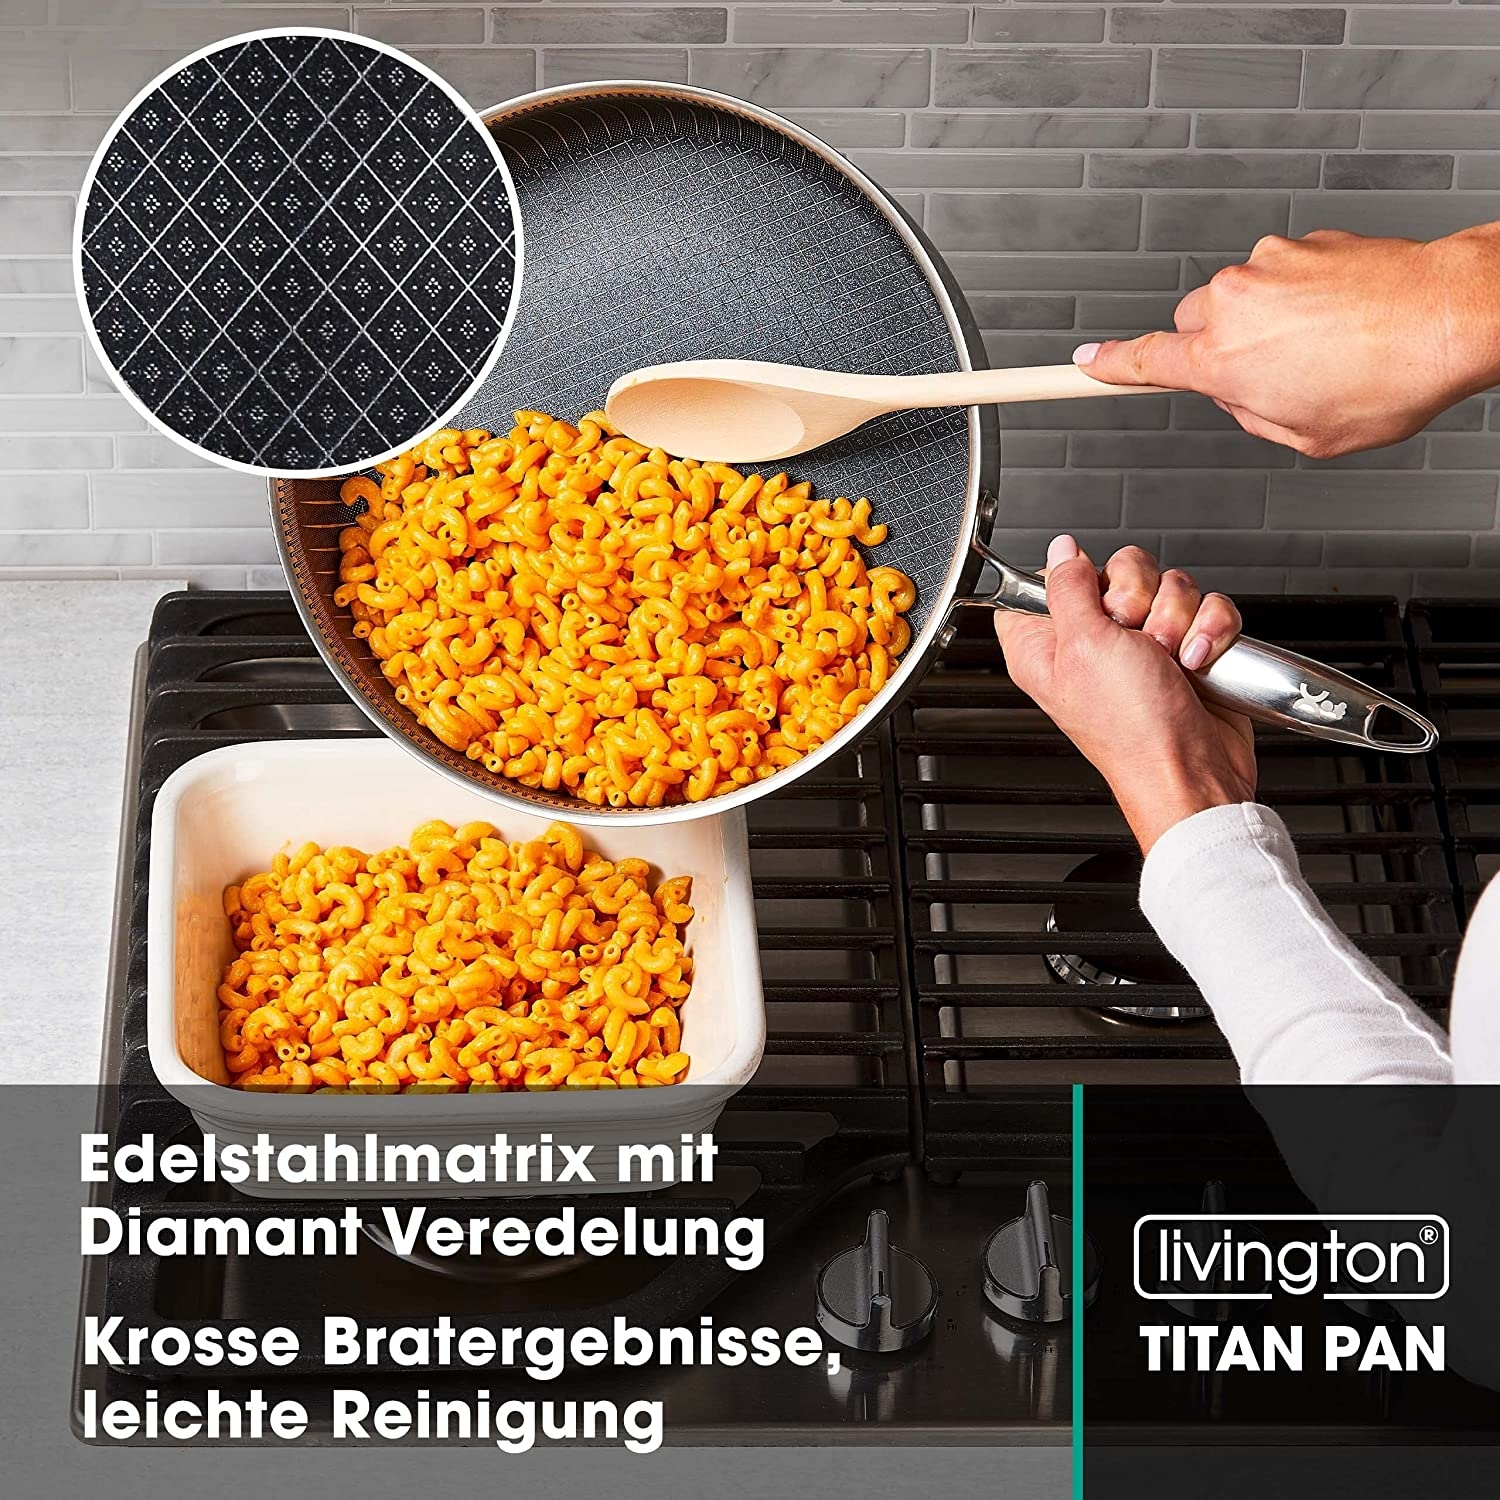 LIVINGTON Titan Pan 28cm Titanium) Set Beschichtung: (Edelstahl, Pfannen